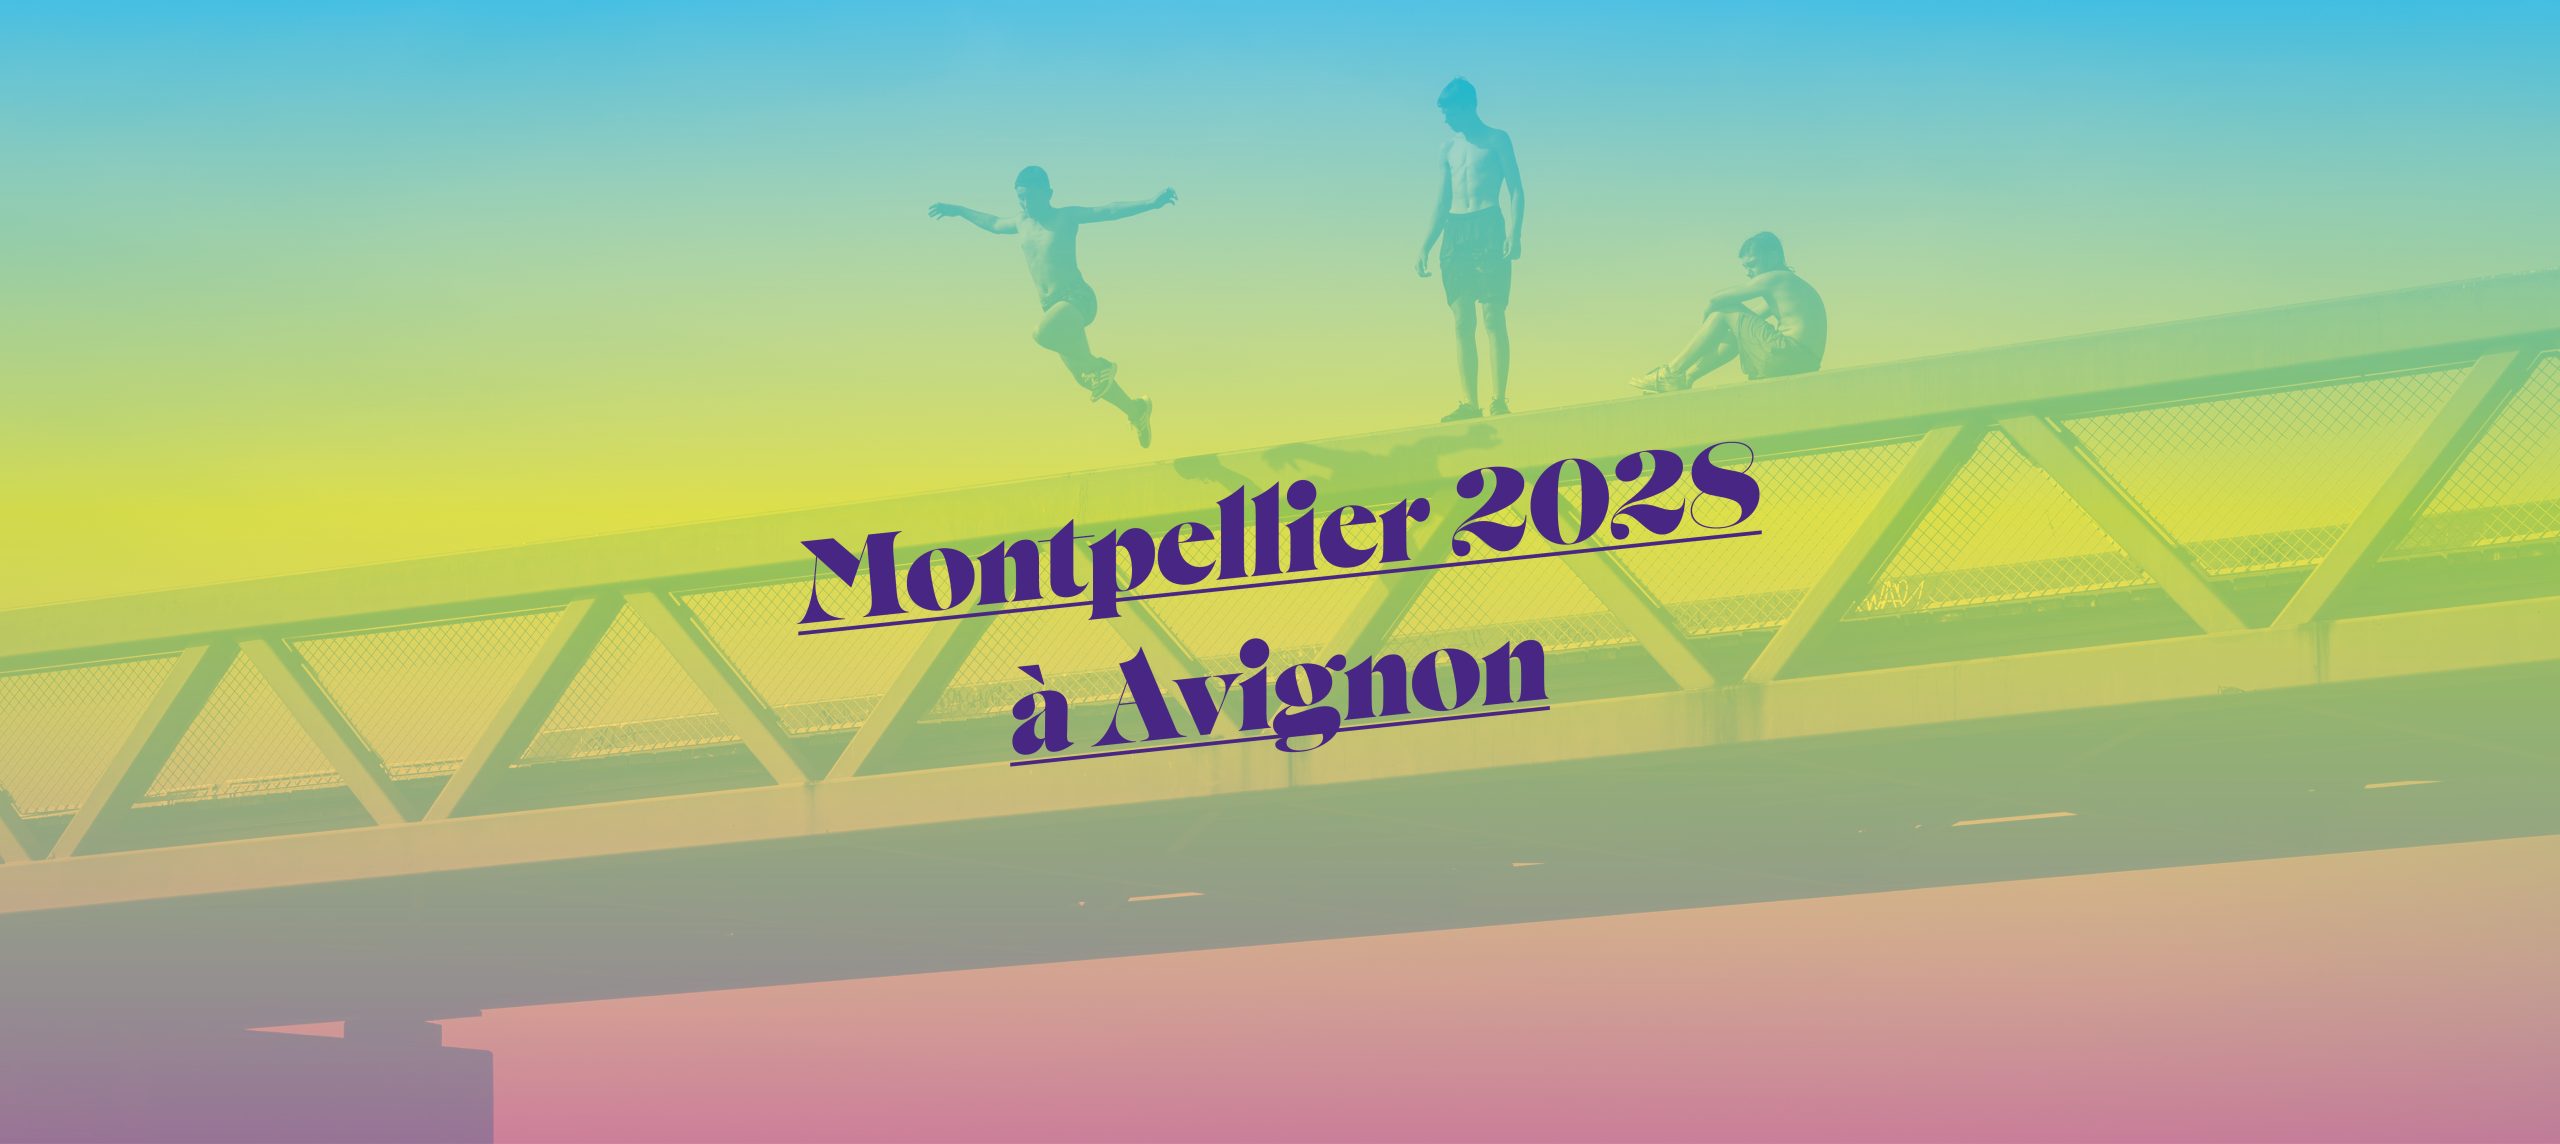 Montpellier 2028 in Avignon